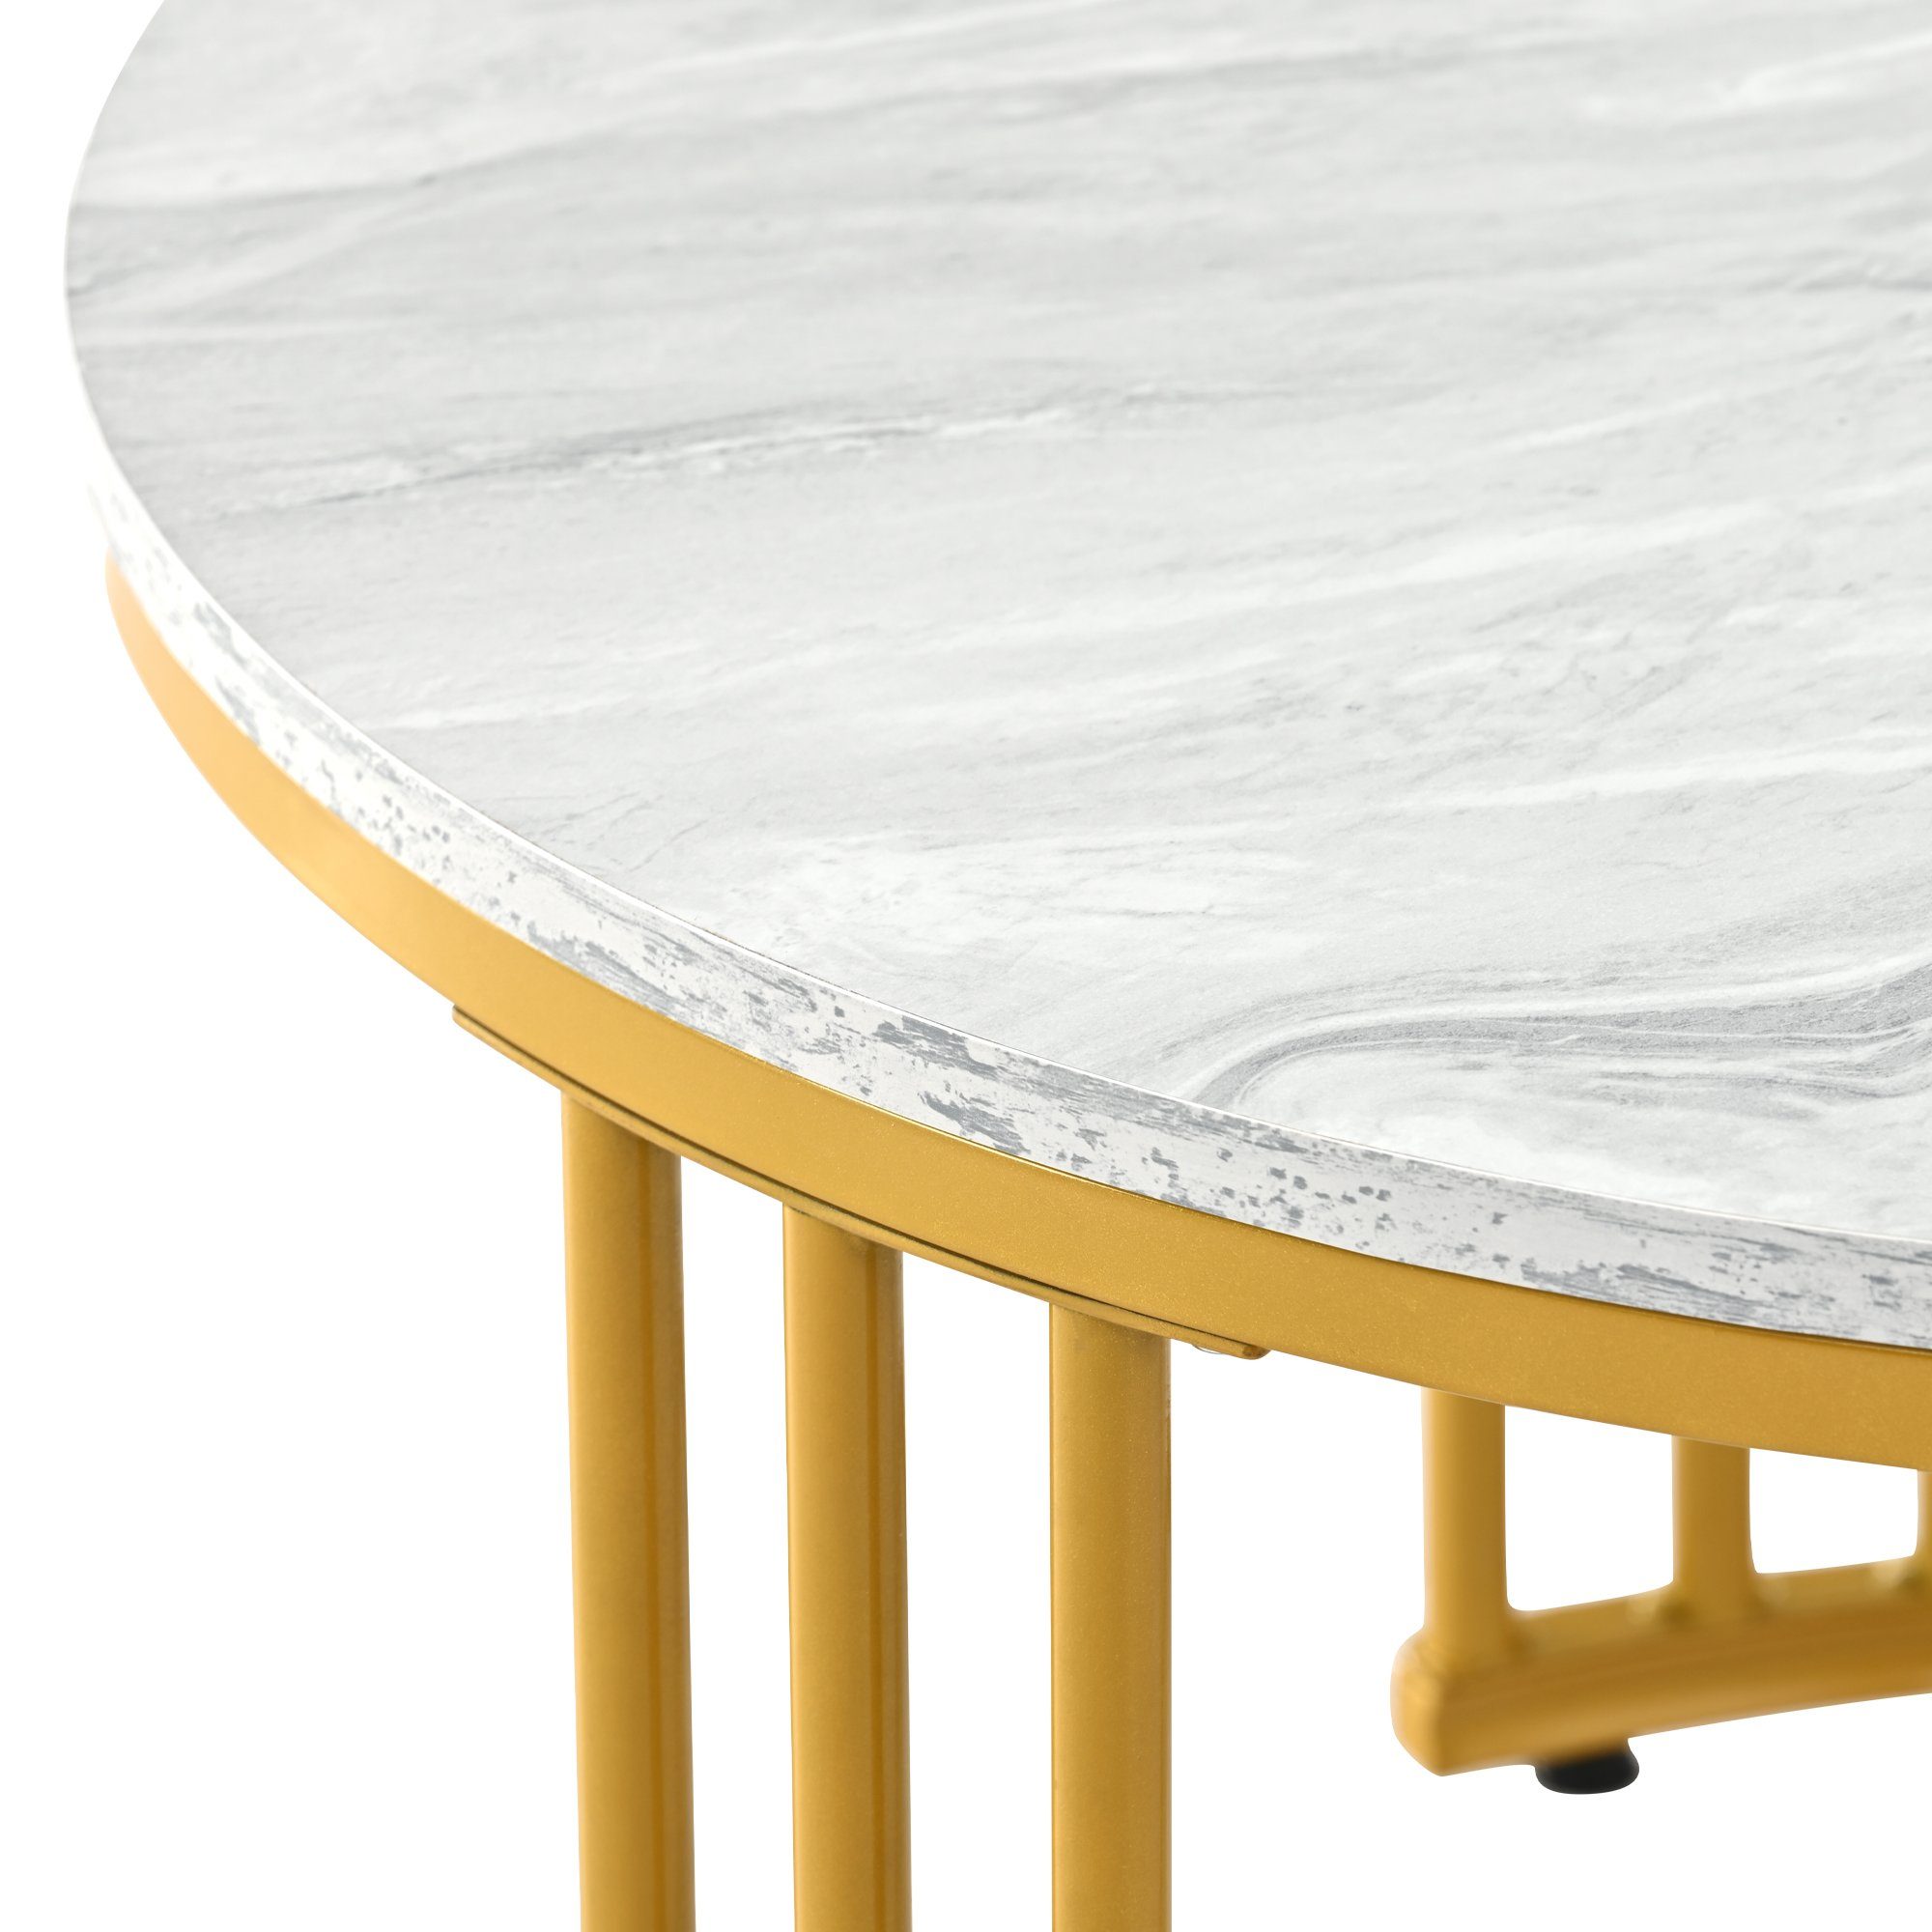 Metallgestell Satztische Set Beistelltisch, Weiß Gold Marmor Wohnzimmer, Modern Rund mit Celya Optik Tisch Couchtisch fürs Wohnzimmer 2er Rund grau Weiss